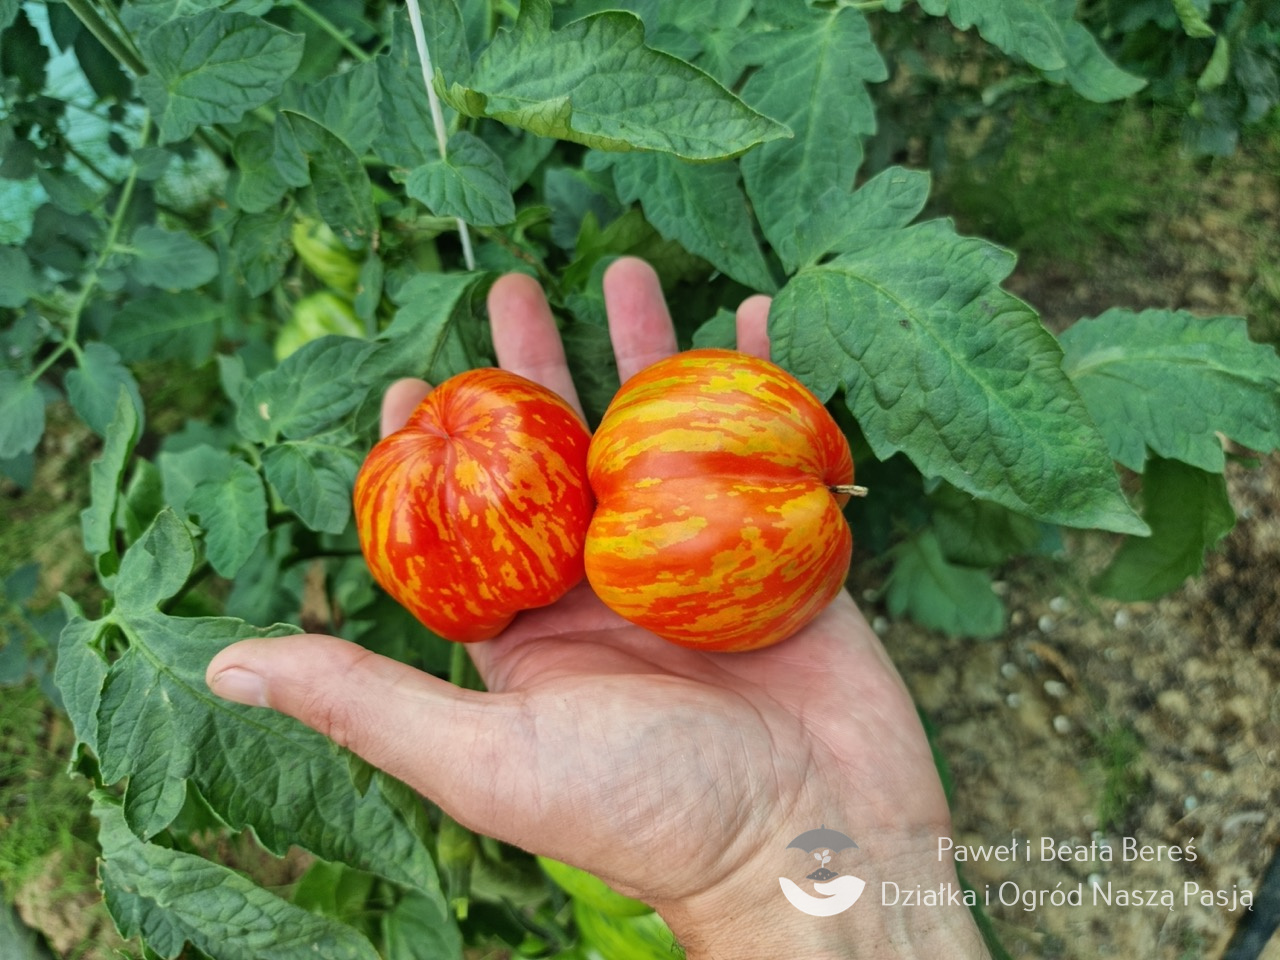 Pomidor odmiany Striped Cavern  – czerwonożółte owoce, pudełkowaty kształt